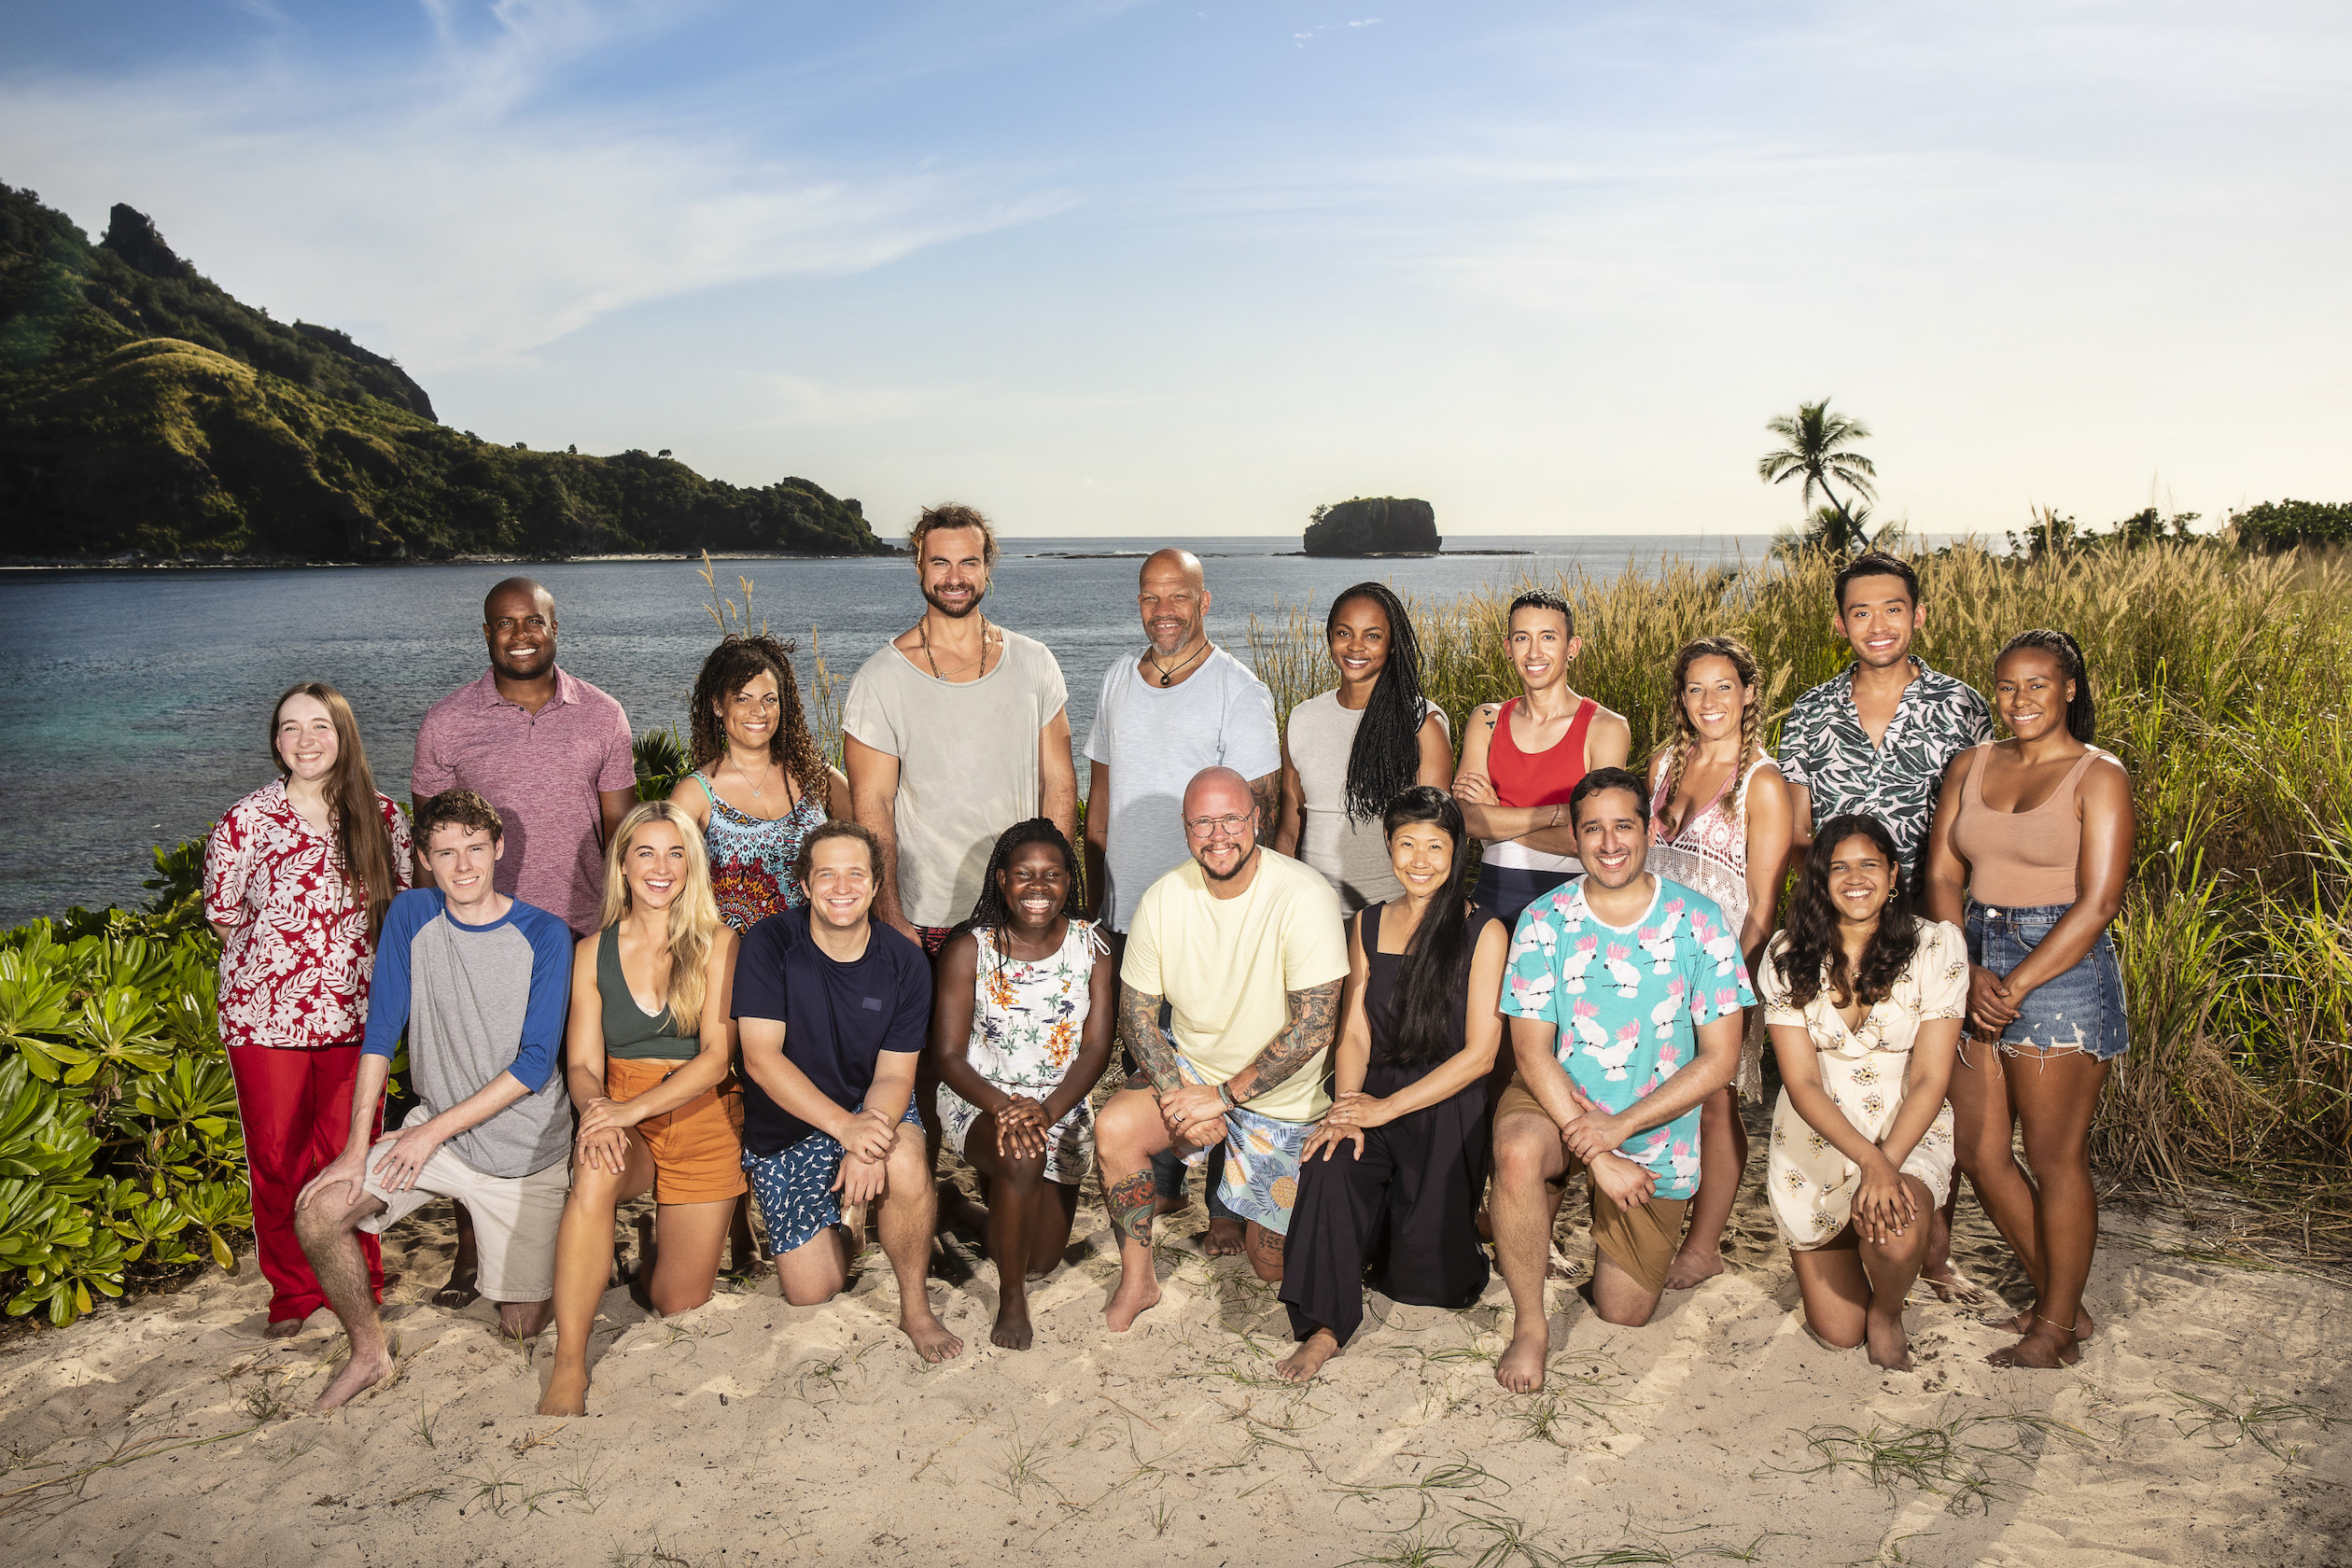 The cast of Survivor 42